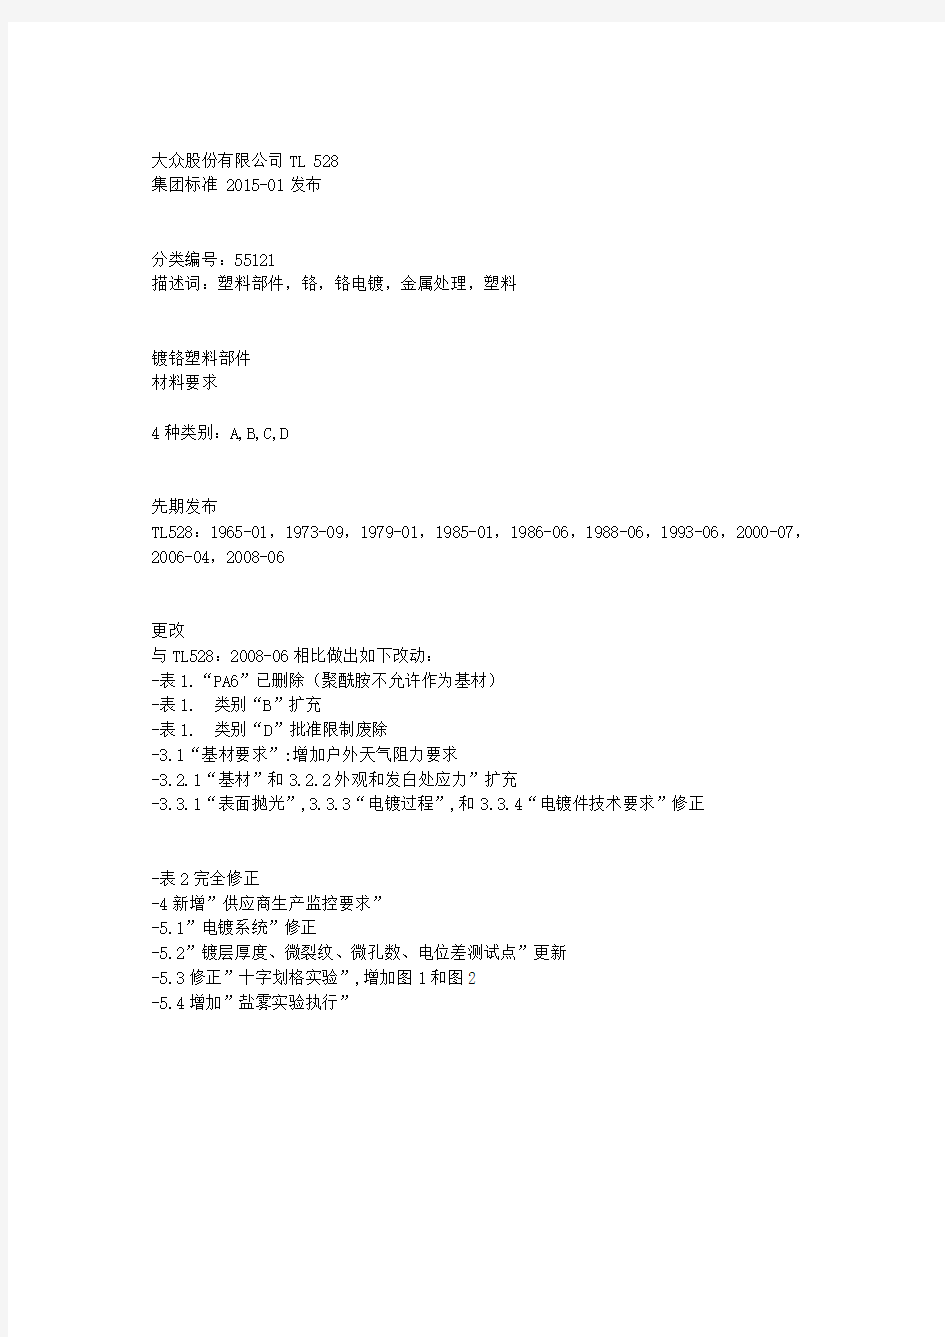 TL_528_2015-1(中文版)